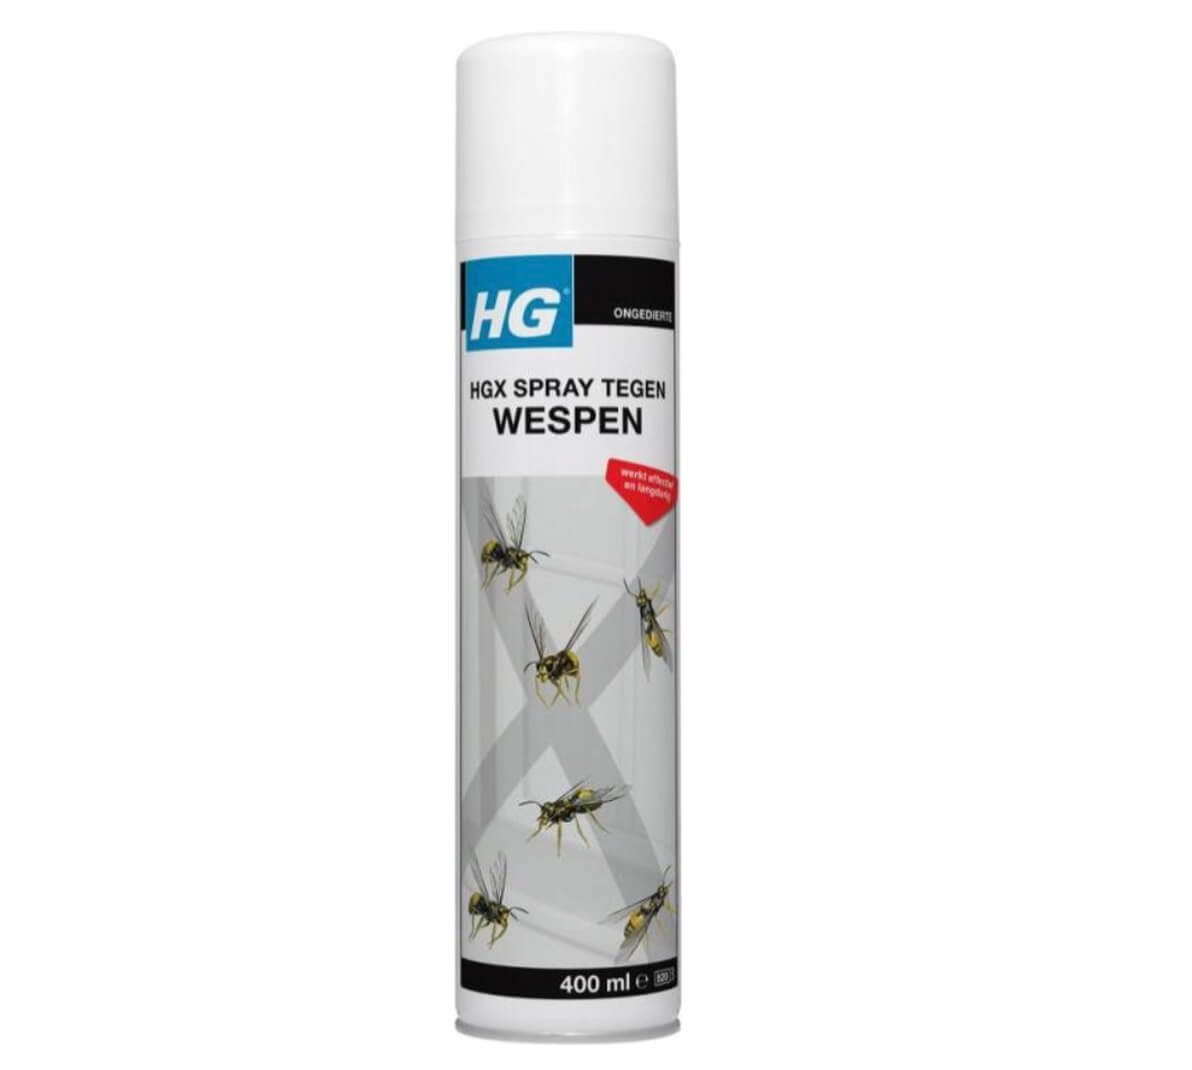 HGX spray tegen wespen - 14068N - 400ml